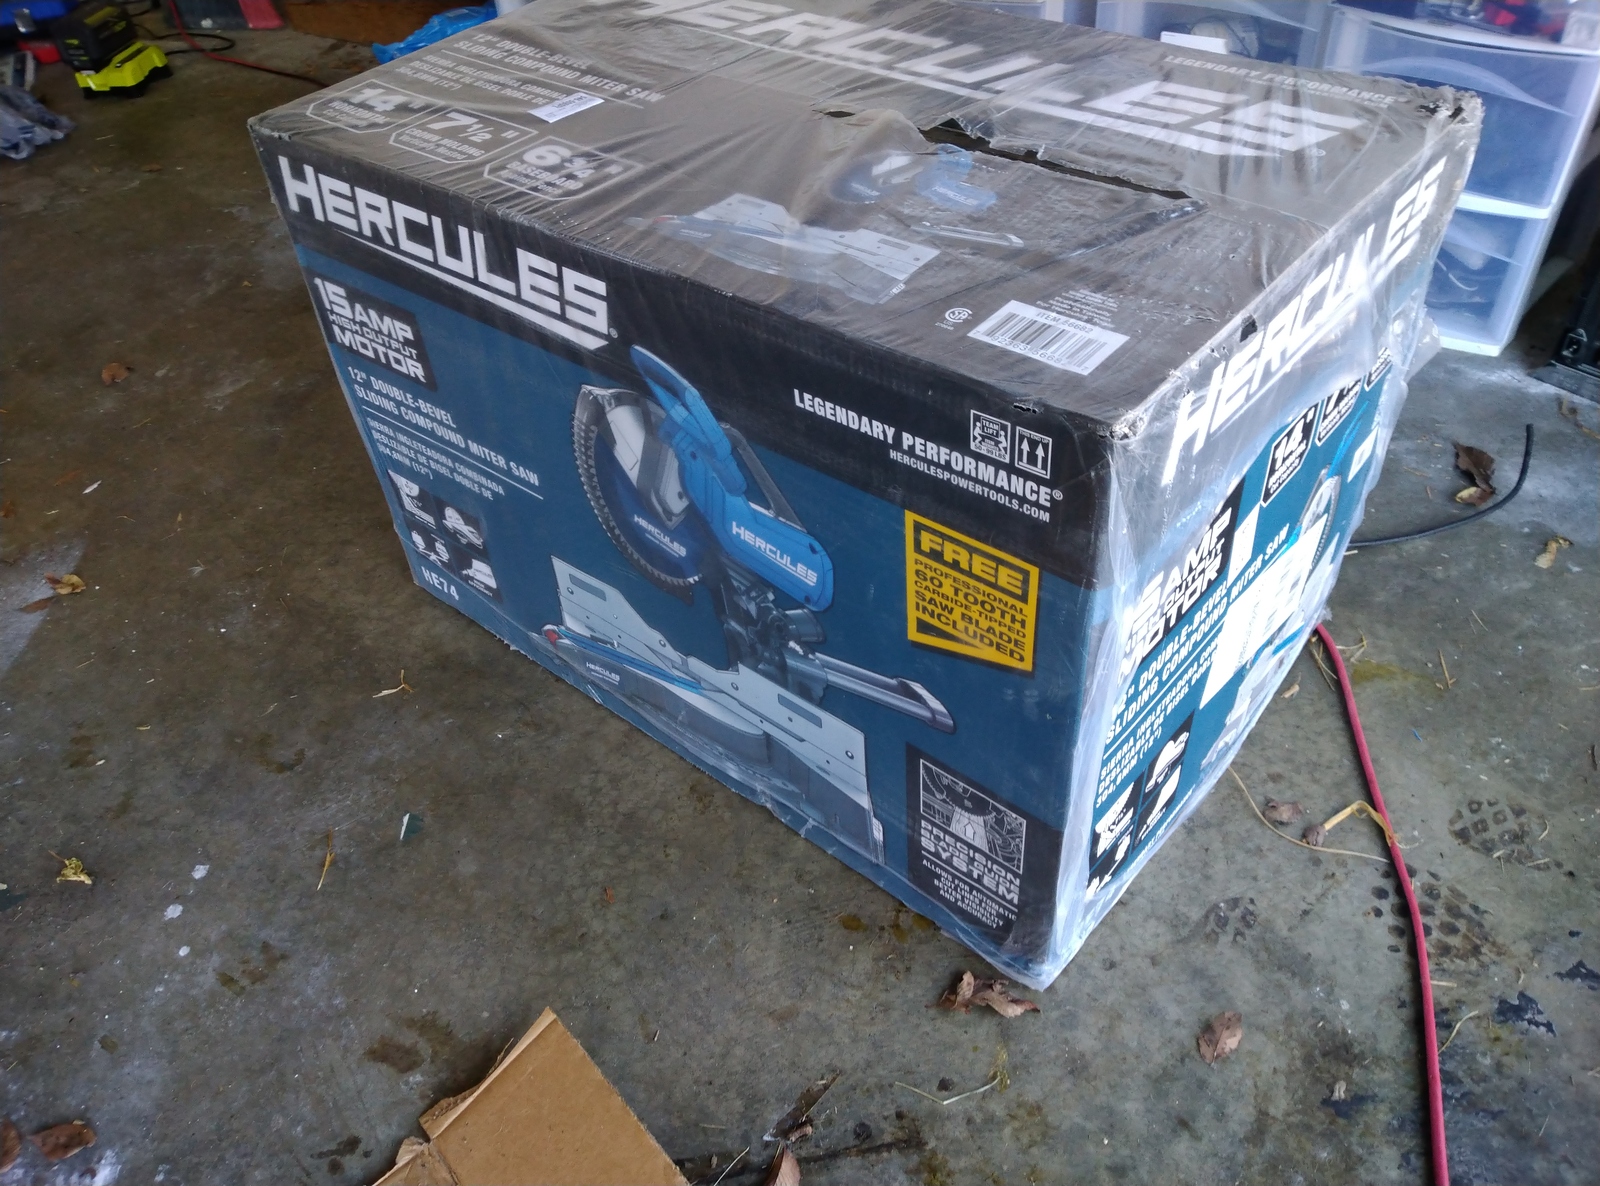 Hercules Miter Saw in Packaging